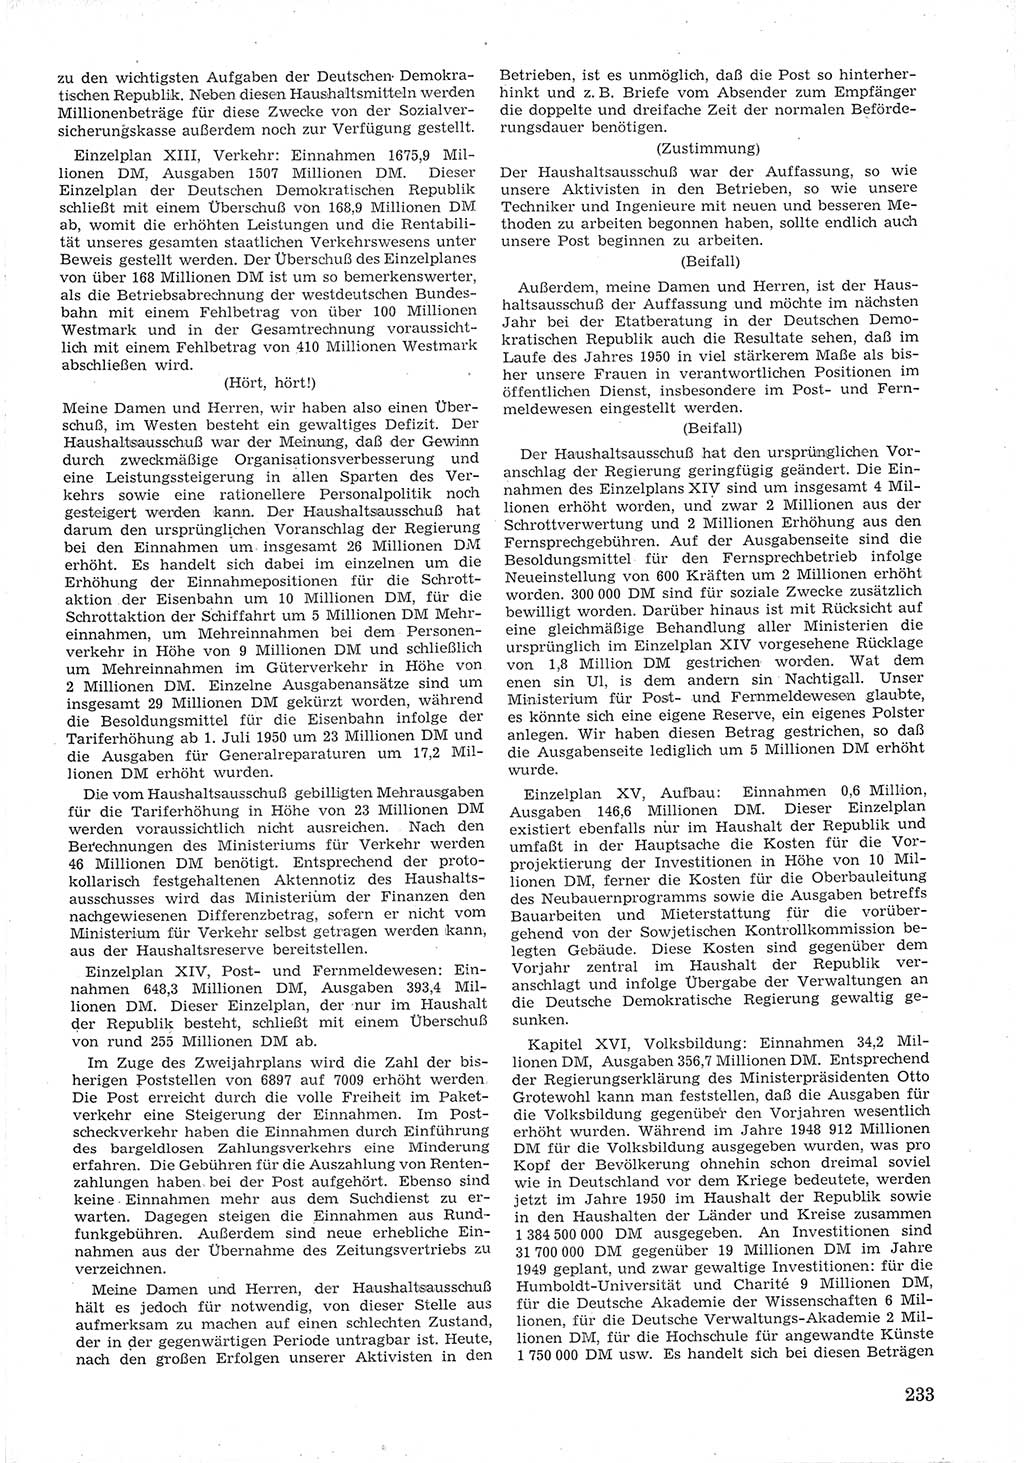 Provisorische Volkskammer (VK) der Deutschen Demokratischen Republik (DDR) 1949-1950, Dokument 247 (Prov. VK DDR 1949-1950, Dok. 247)